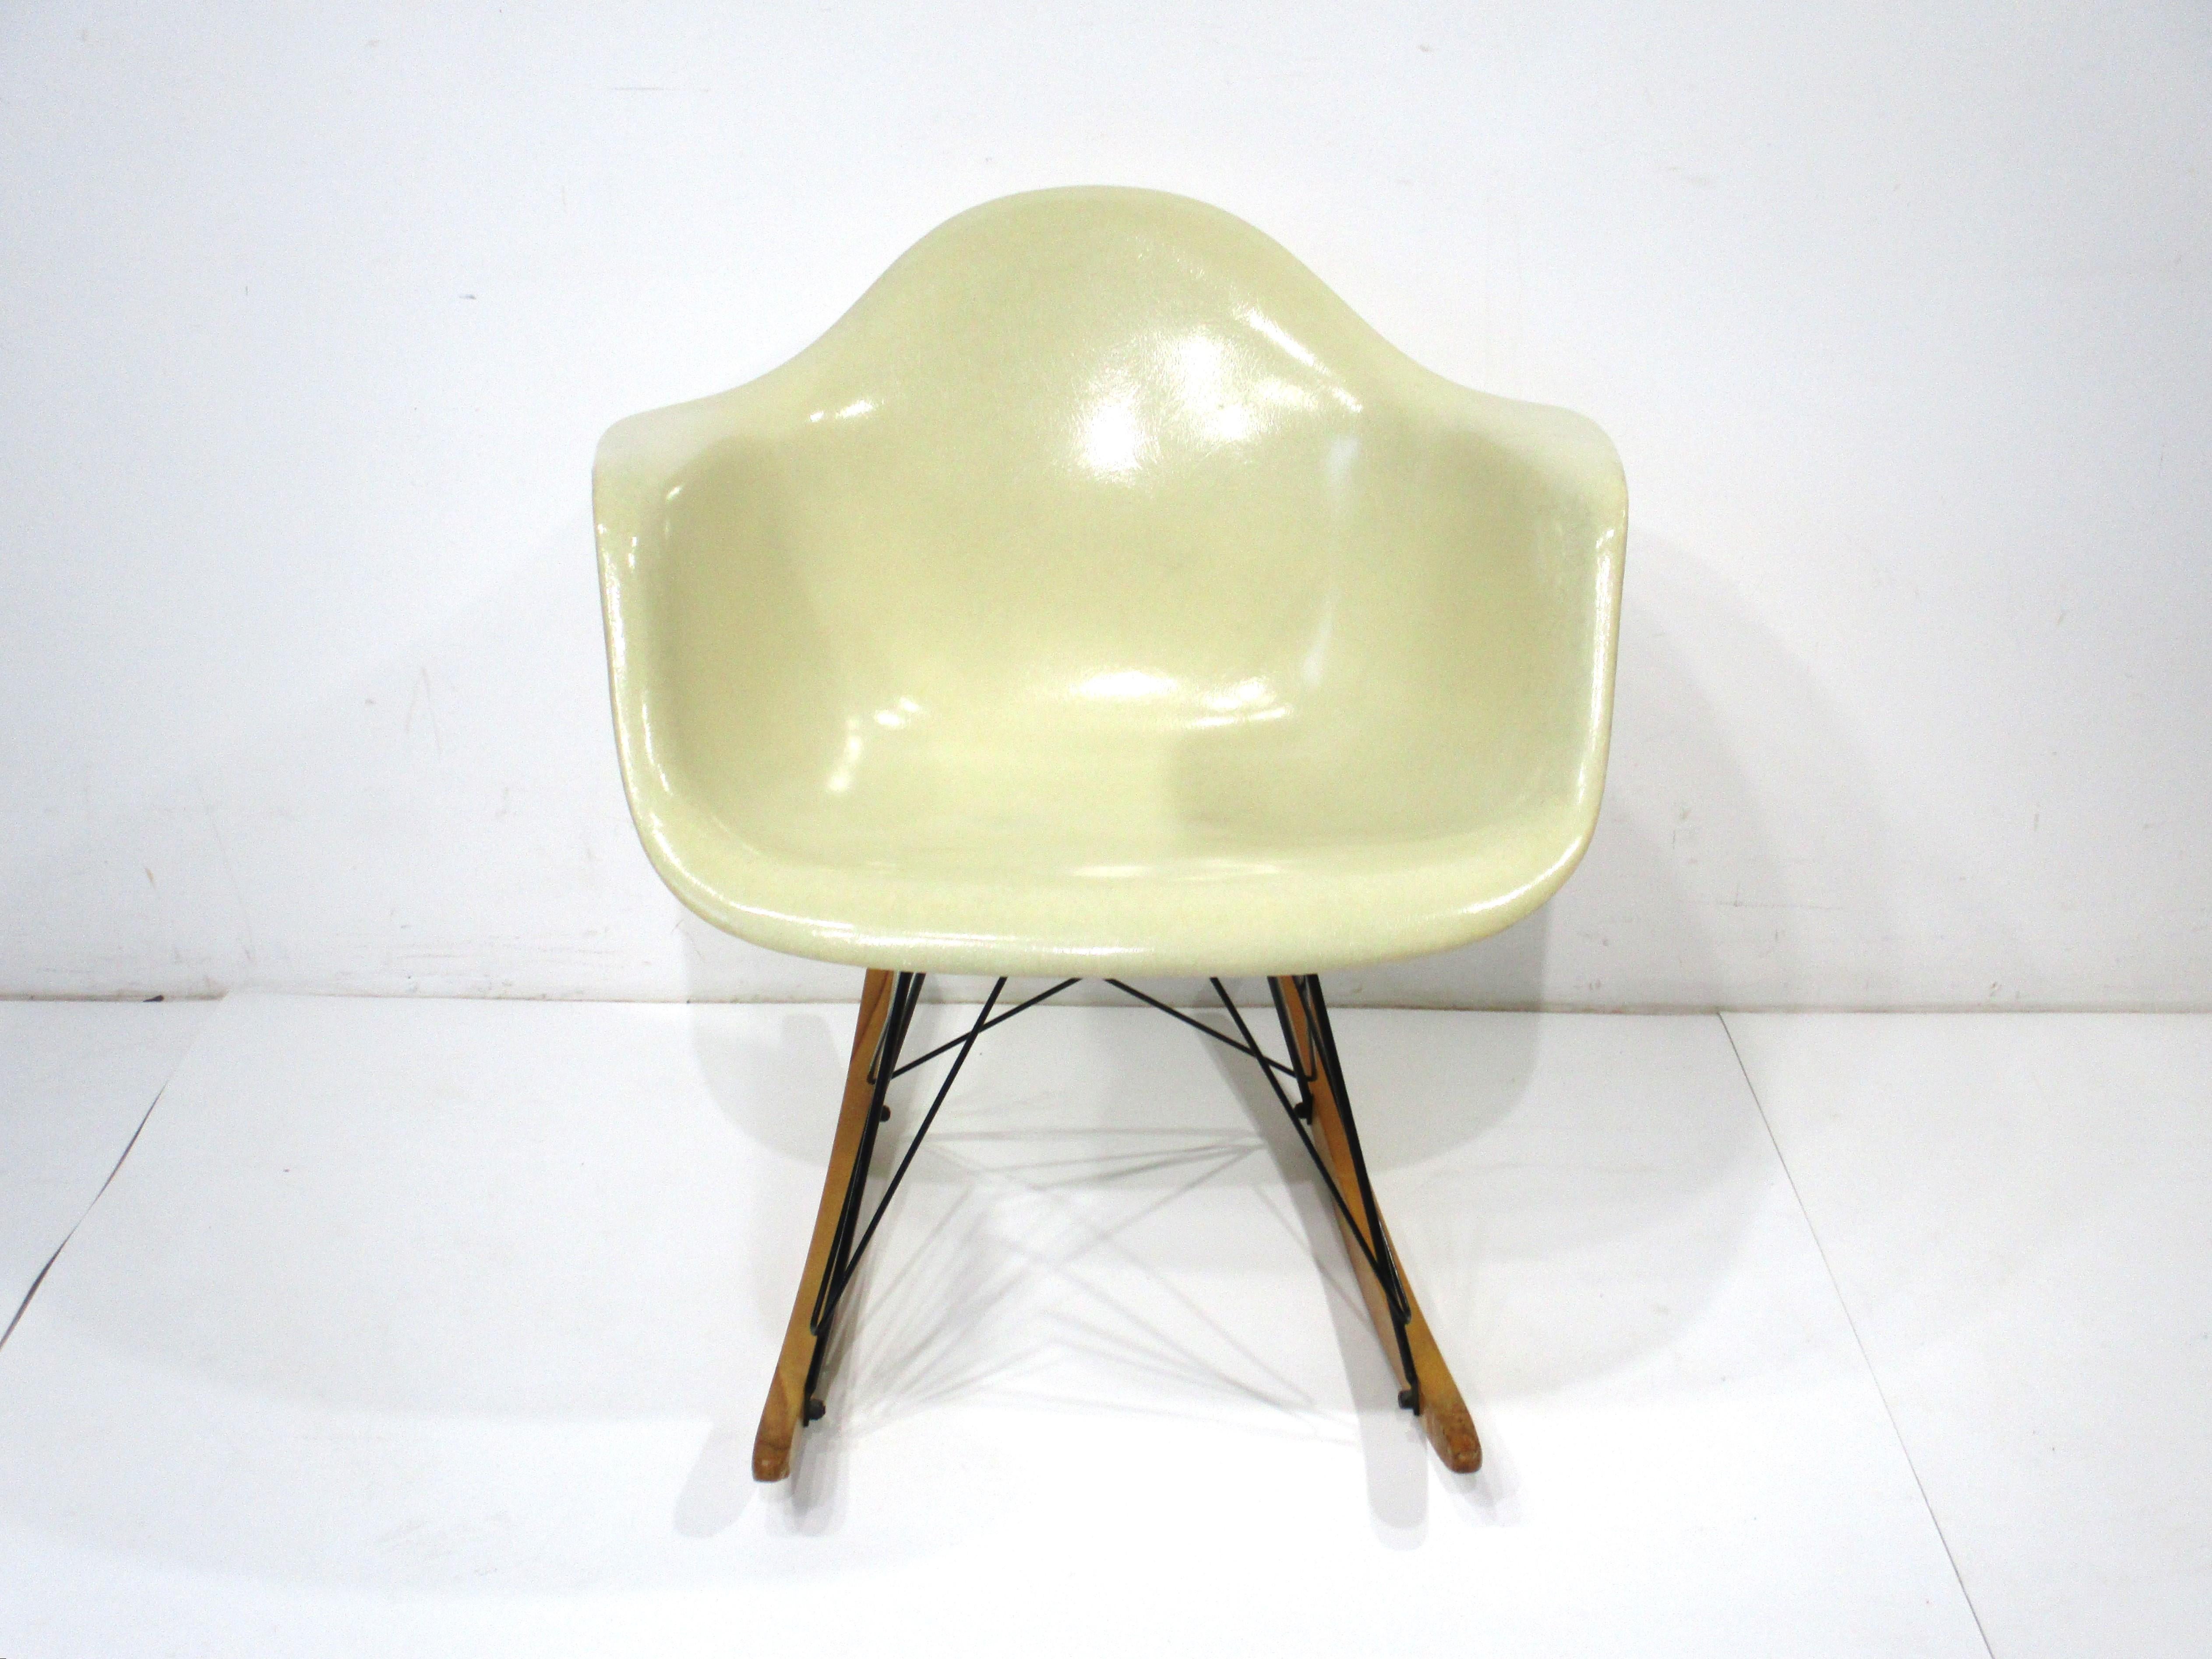 Très belle chaise iconique du milieu du siècle en fibre de verre moulée à bascule de couleur parchemin. Le socle noir satiné est constitué de tiges métalliques et de patins en bois de bouleau, ce qui confère à l'ensemble un grand contraste. Conçue